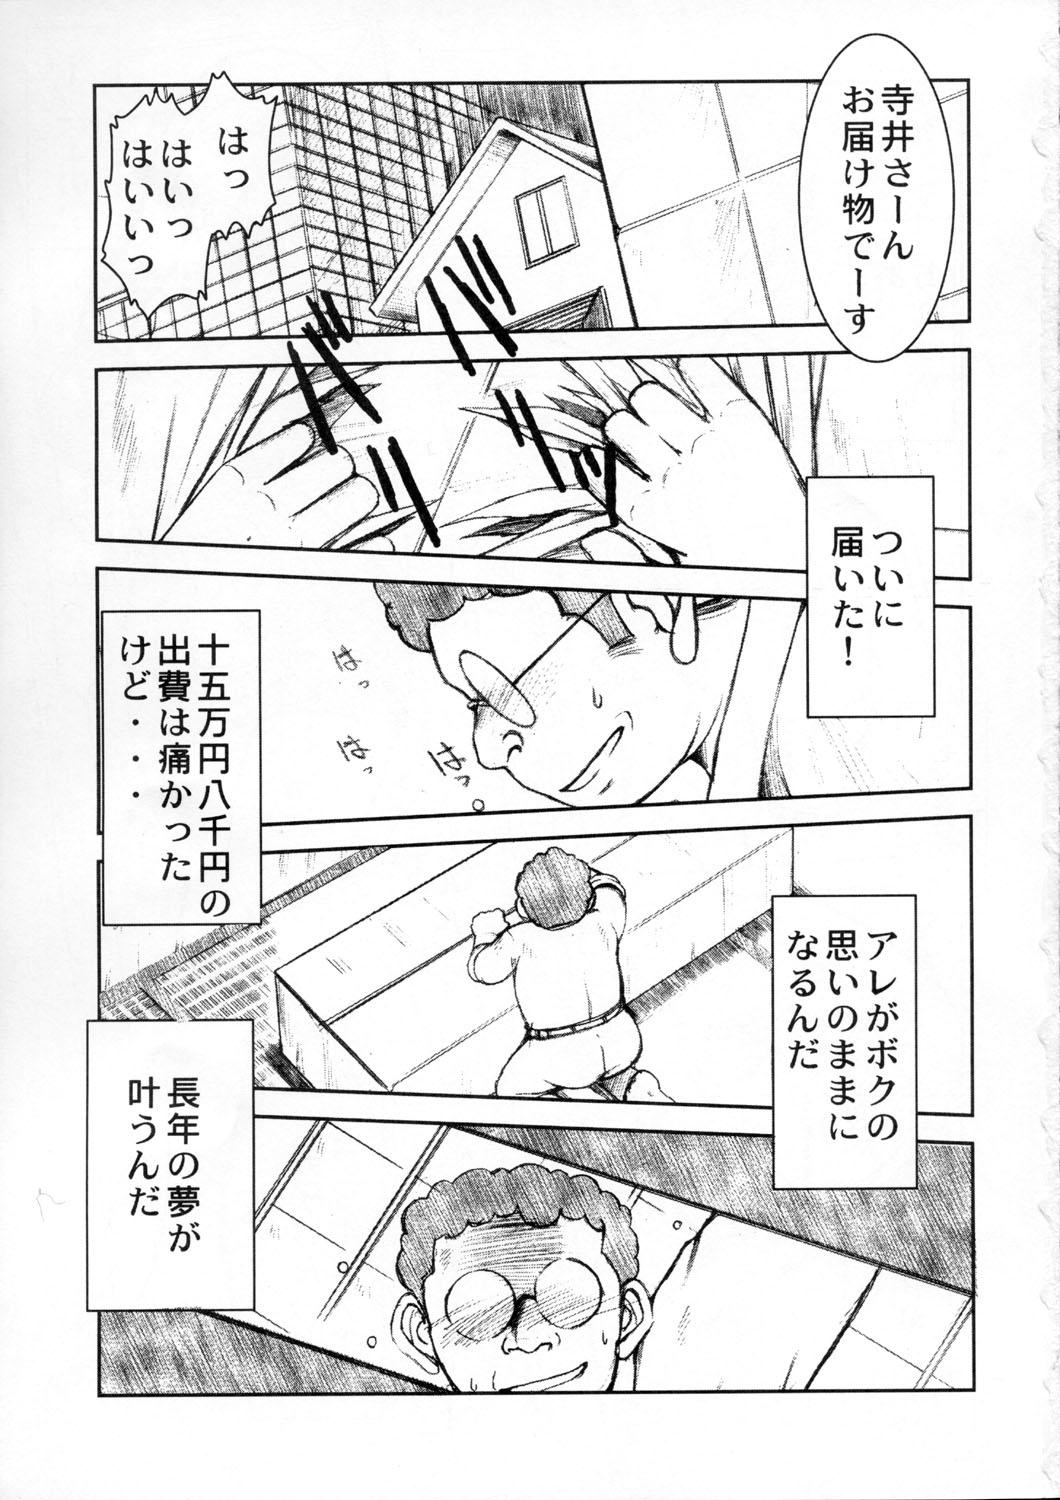 Romantic Akibon - Kochikame Blow Job Movies - Page 2